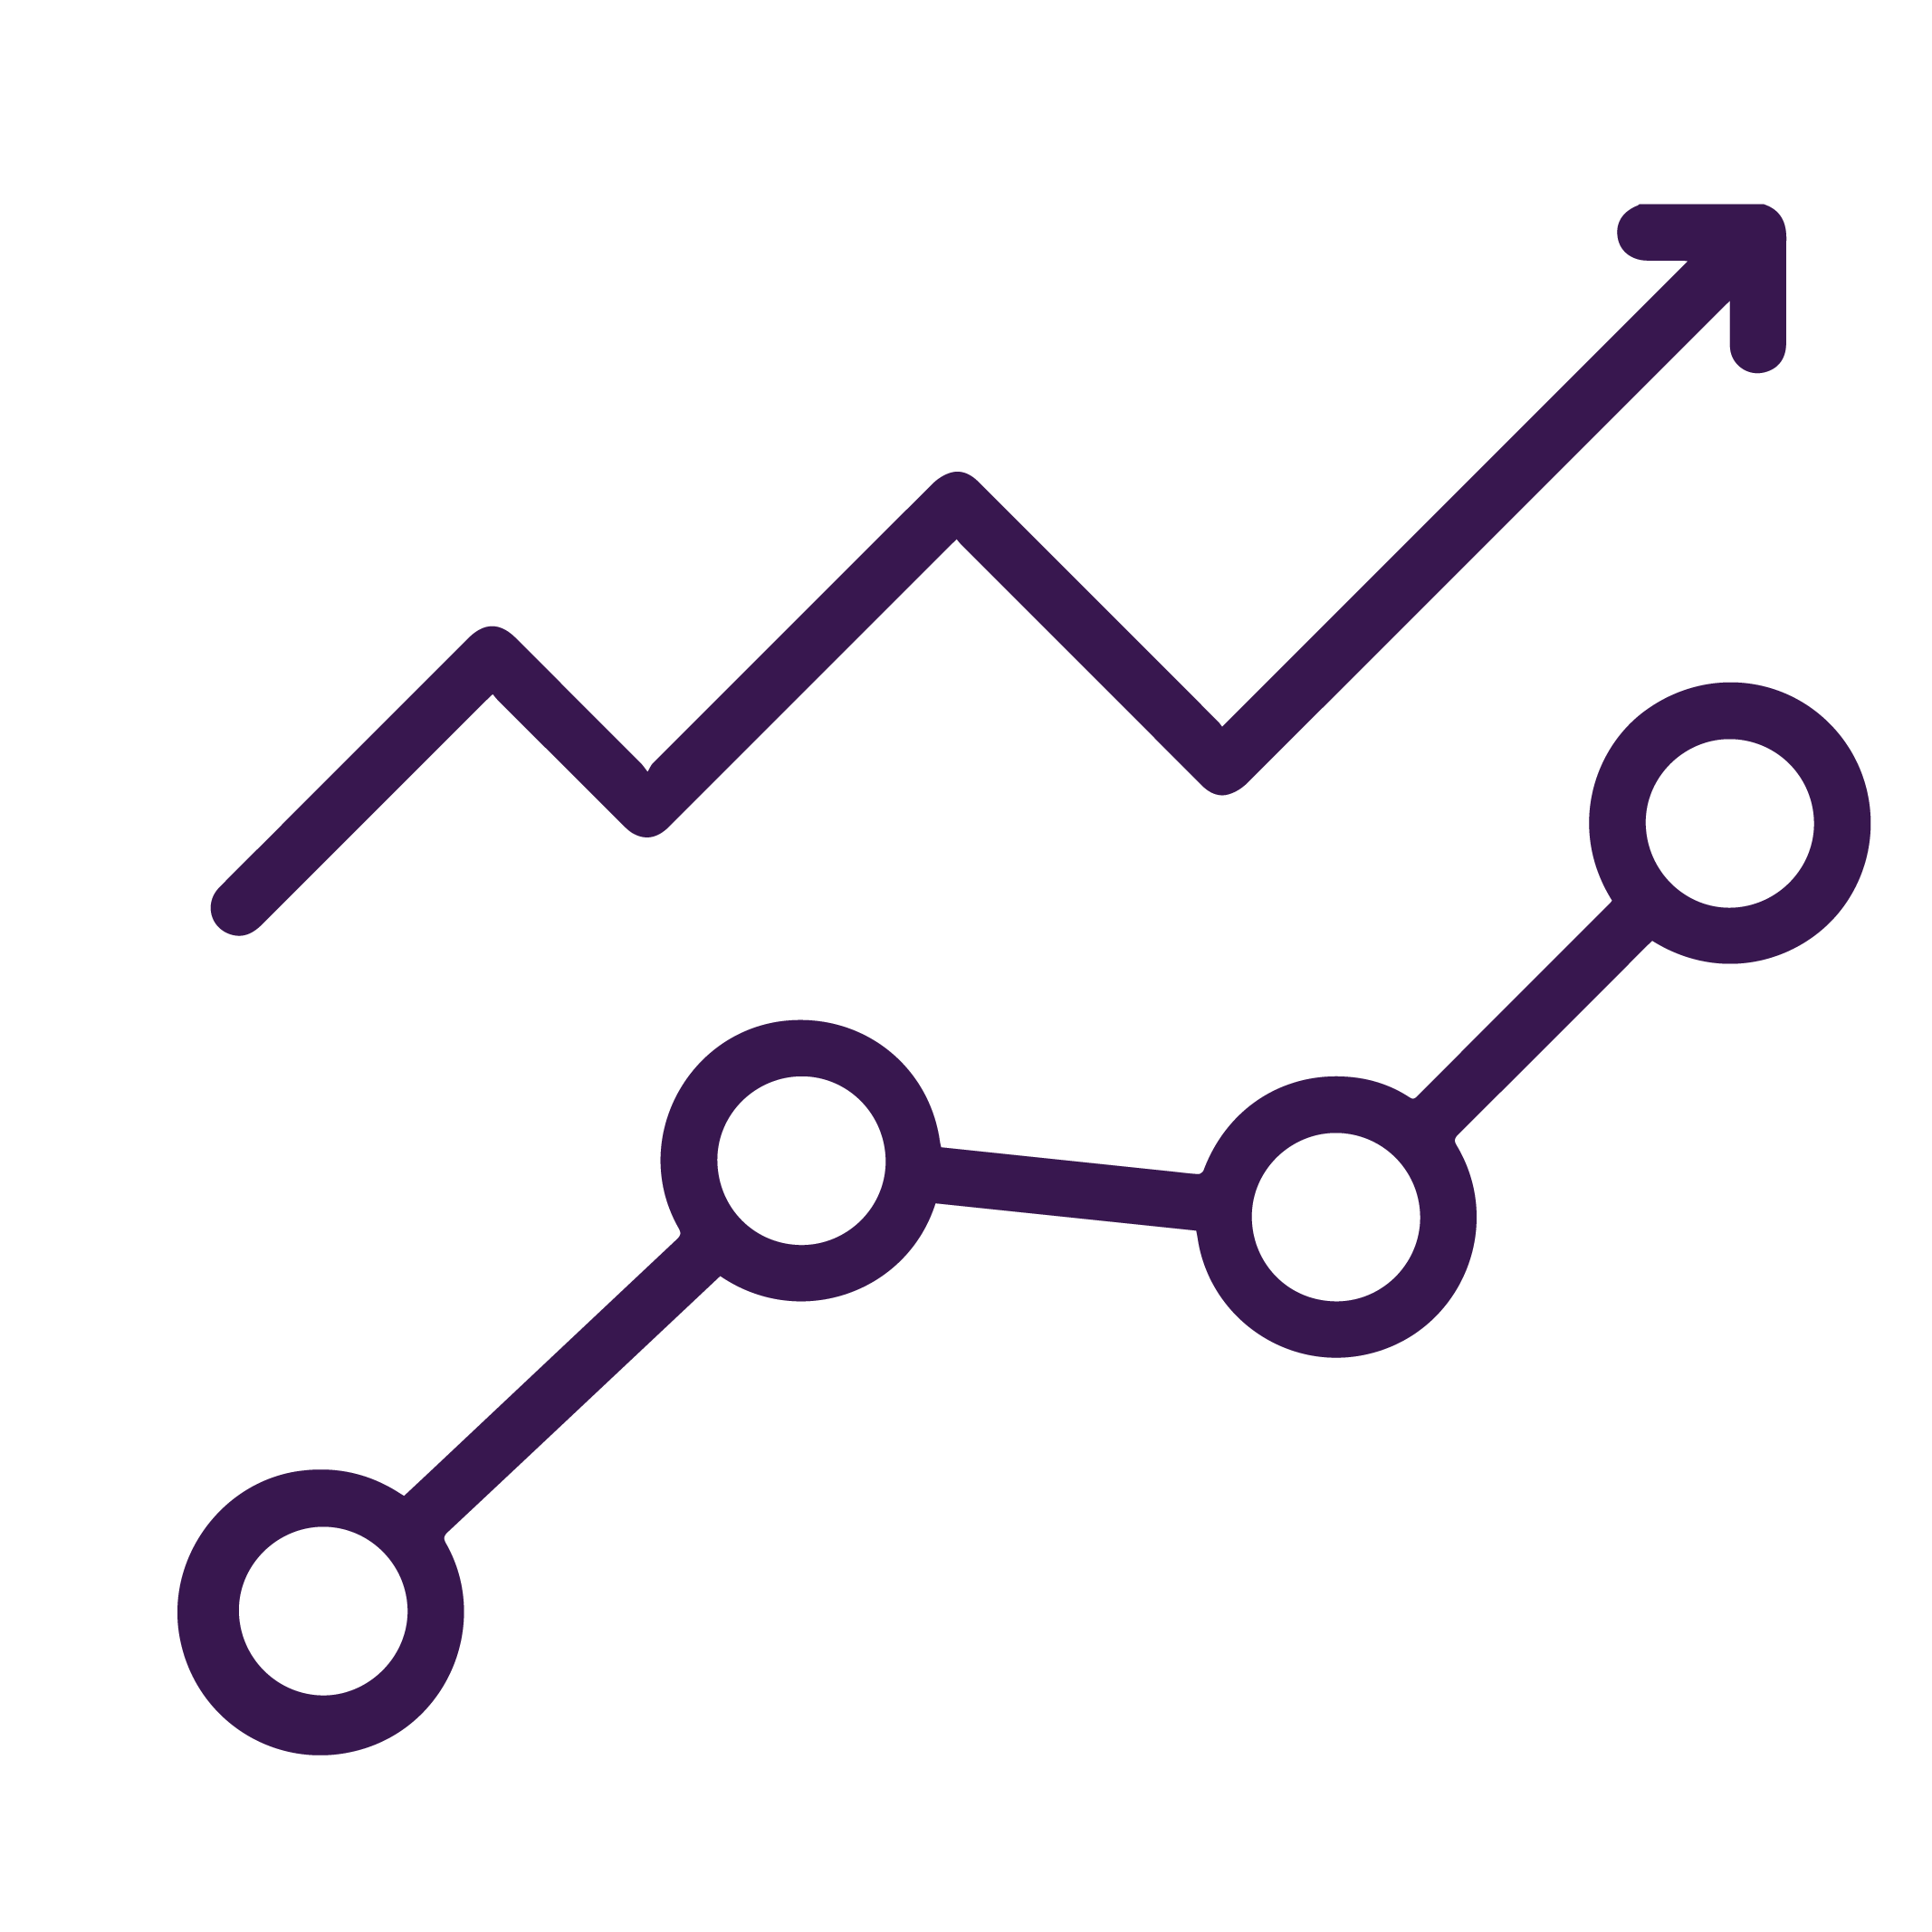 Icono que representa las flechas de aumento de ventas en color morado